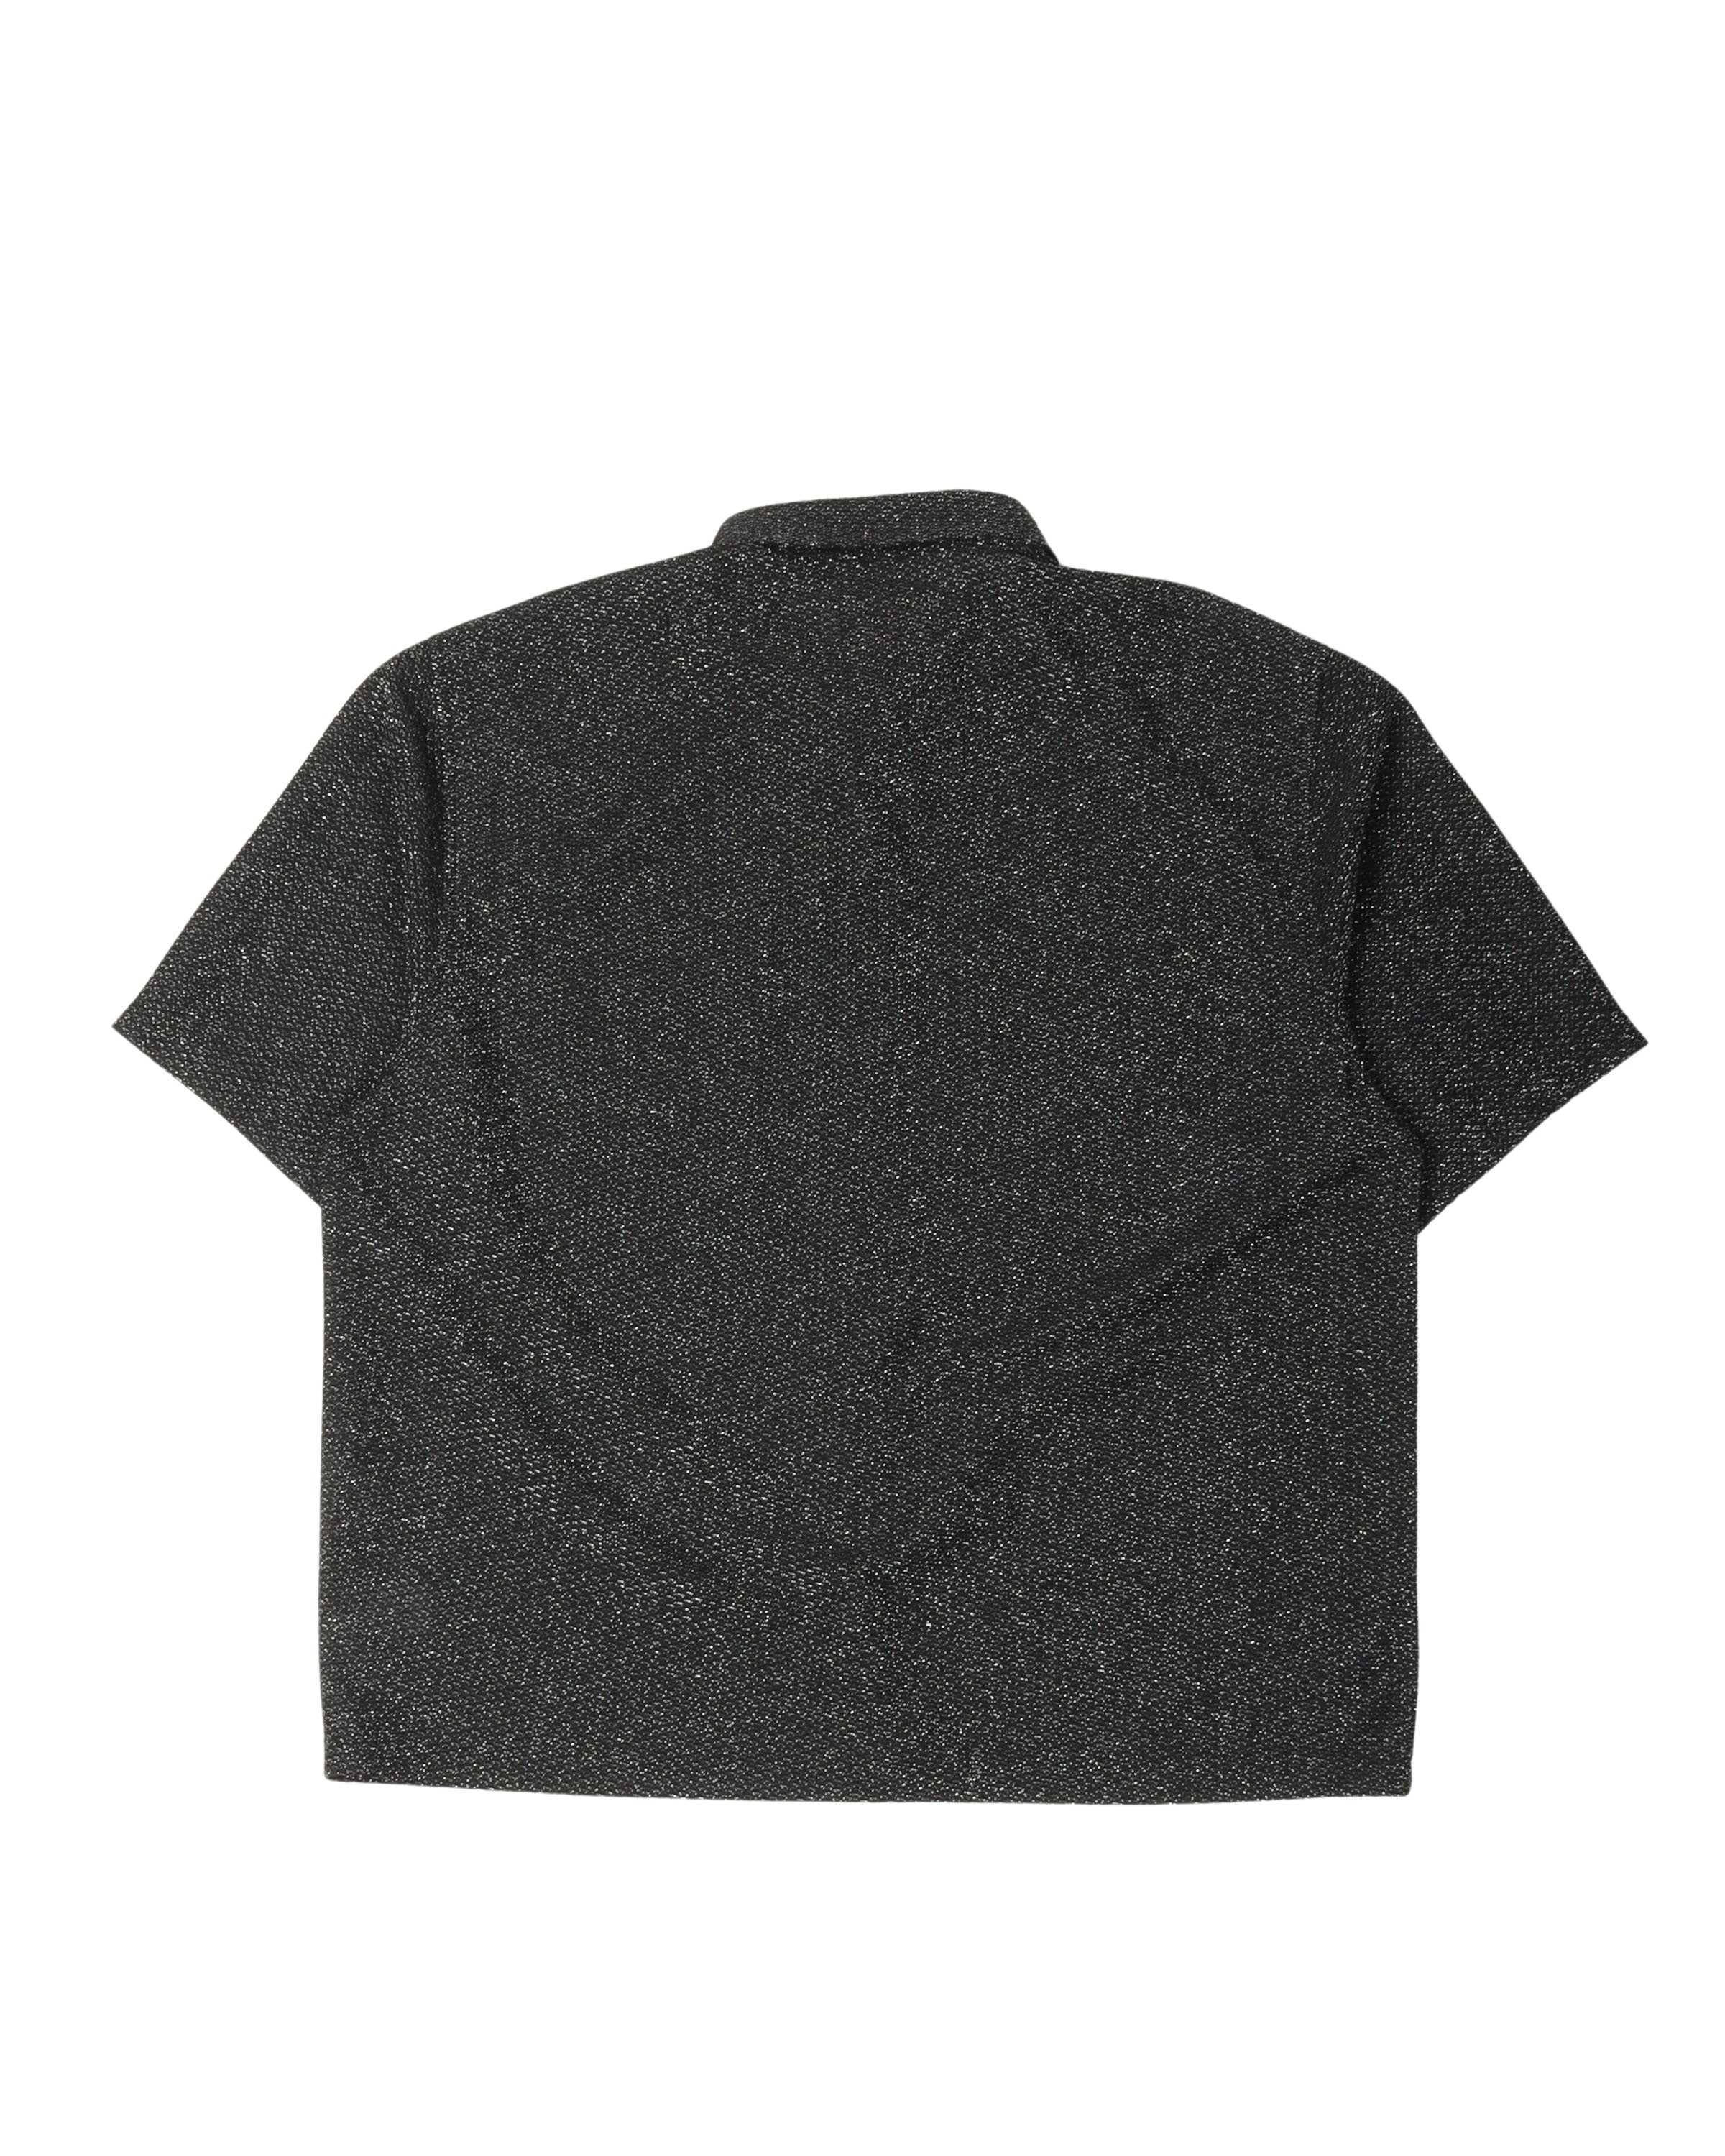 FW22 Lurex Short Sleeve Shirt